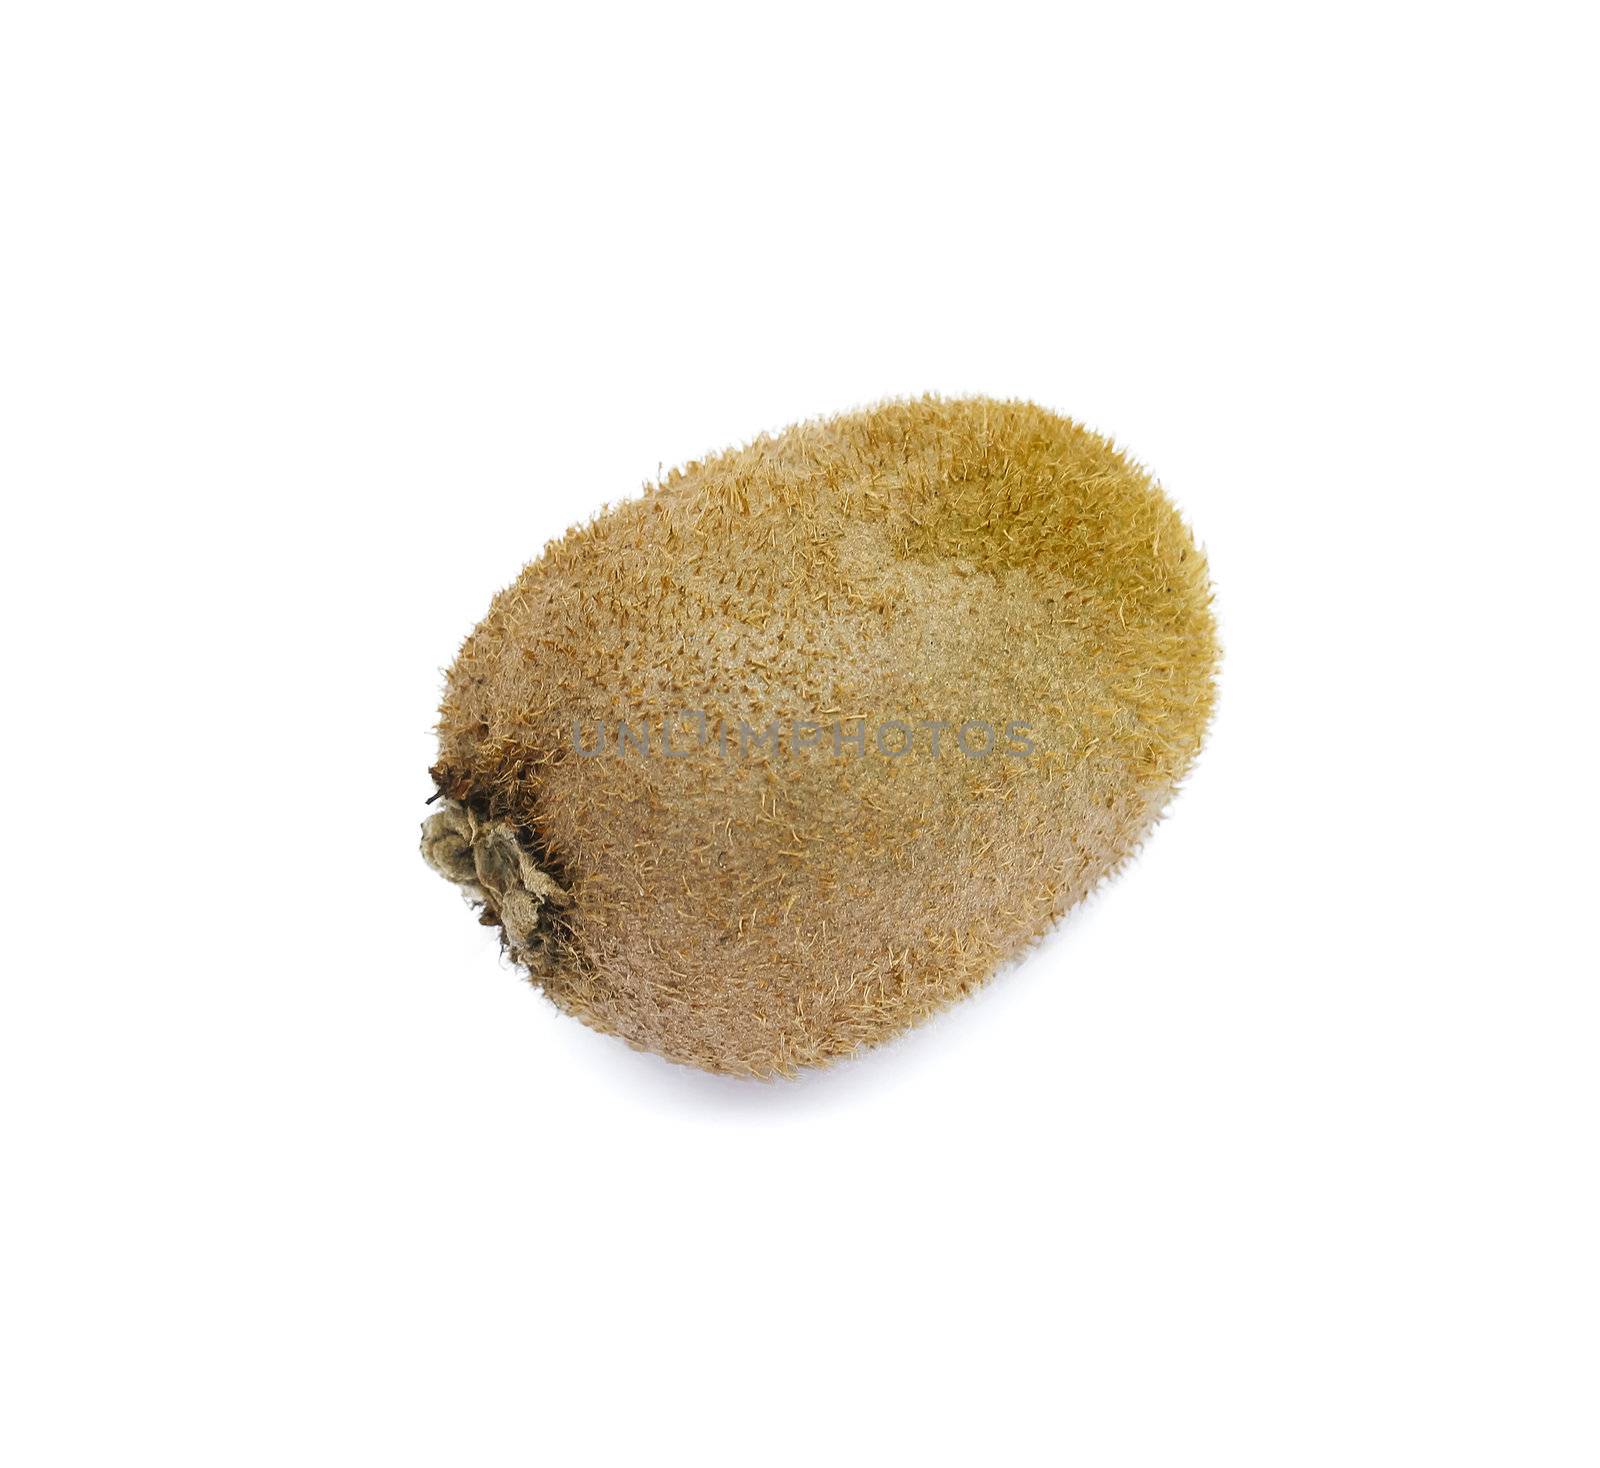 One kiwi fruit on a white background